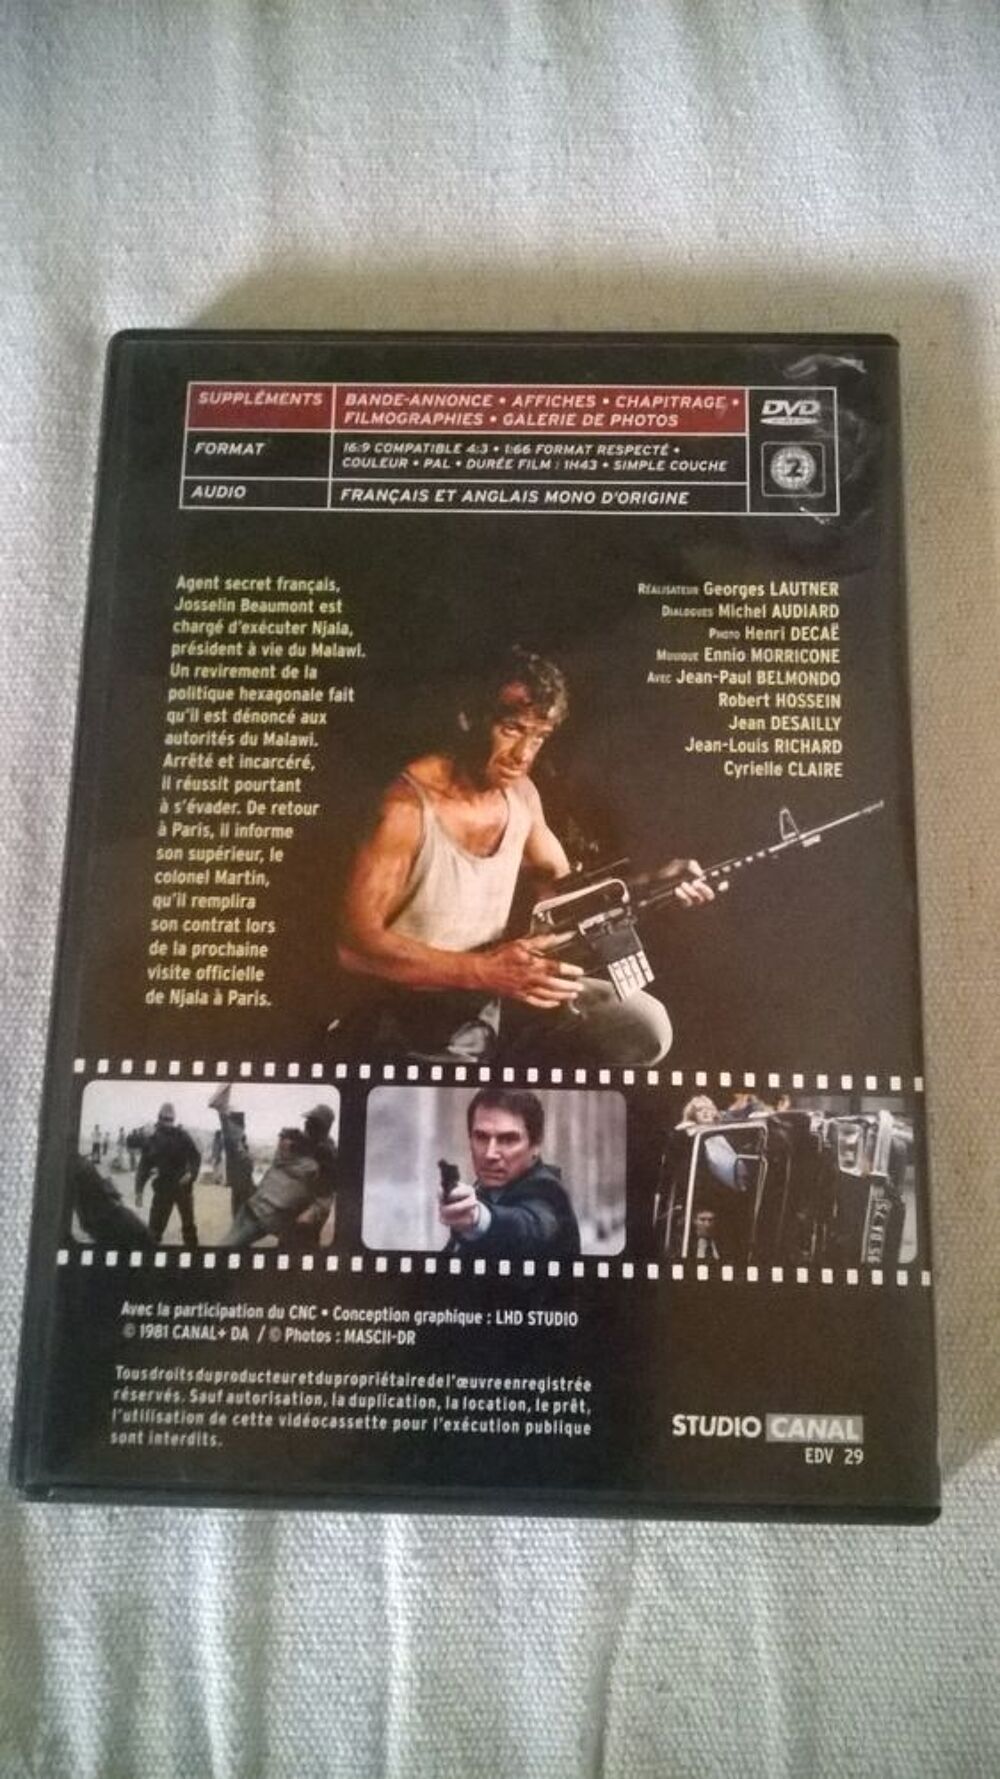 DVD BELMONDO
LE PROFESSIONNEL
1981
Excellent etat
Agent DVD et blu-ray